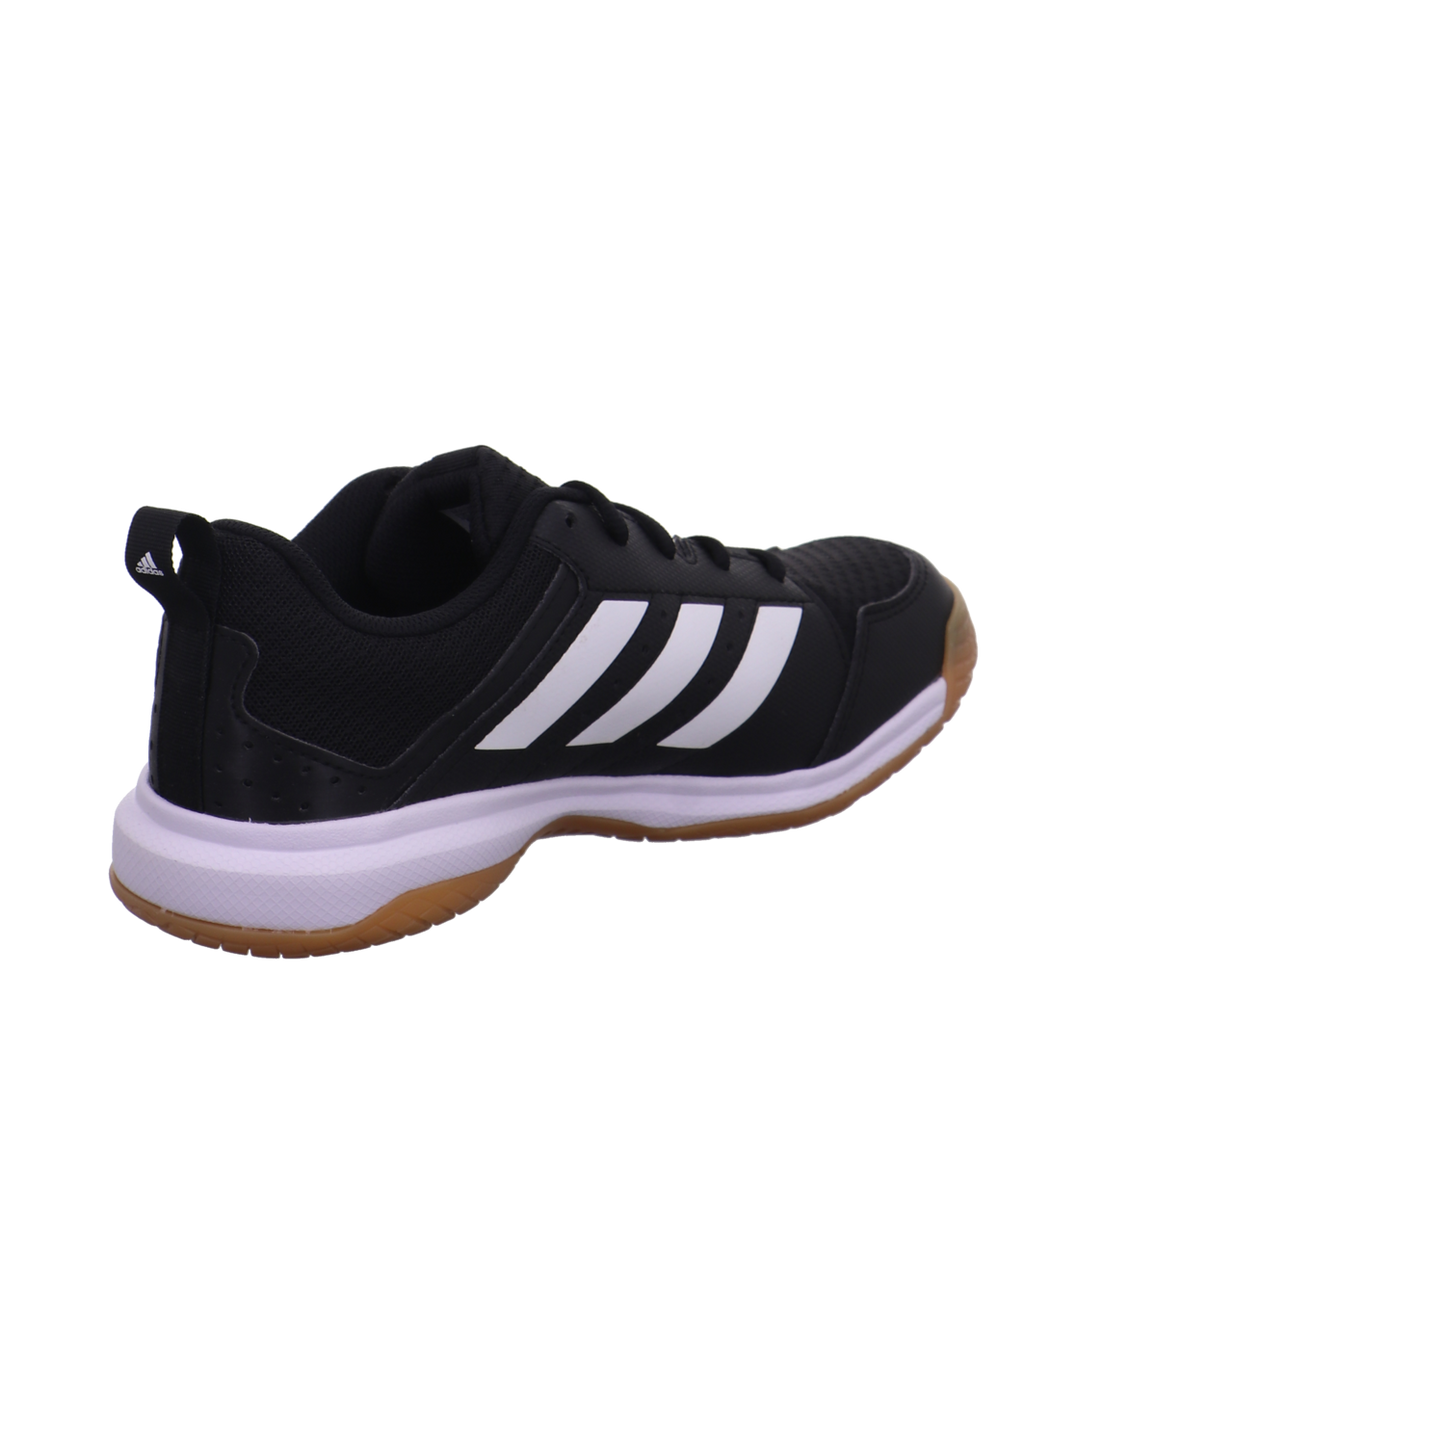 Adidas Training und Hallenschuhe schwarz-weiß Bild5